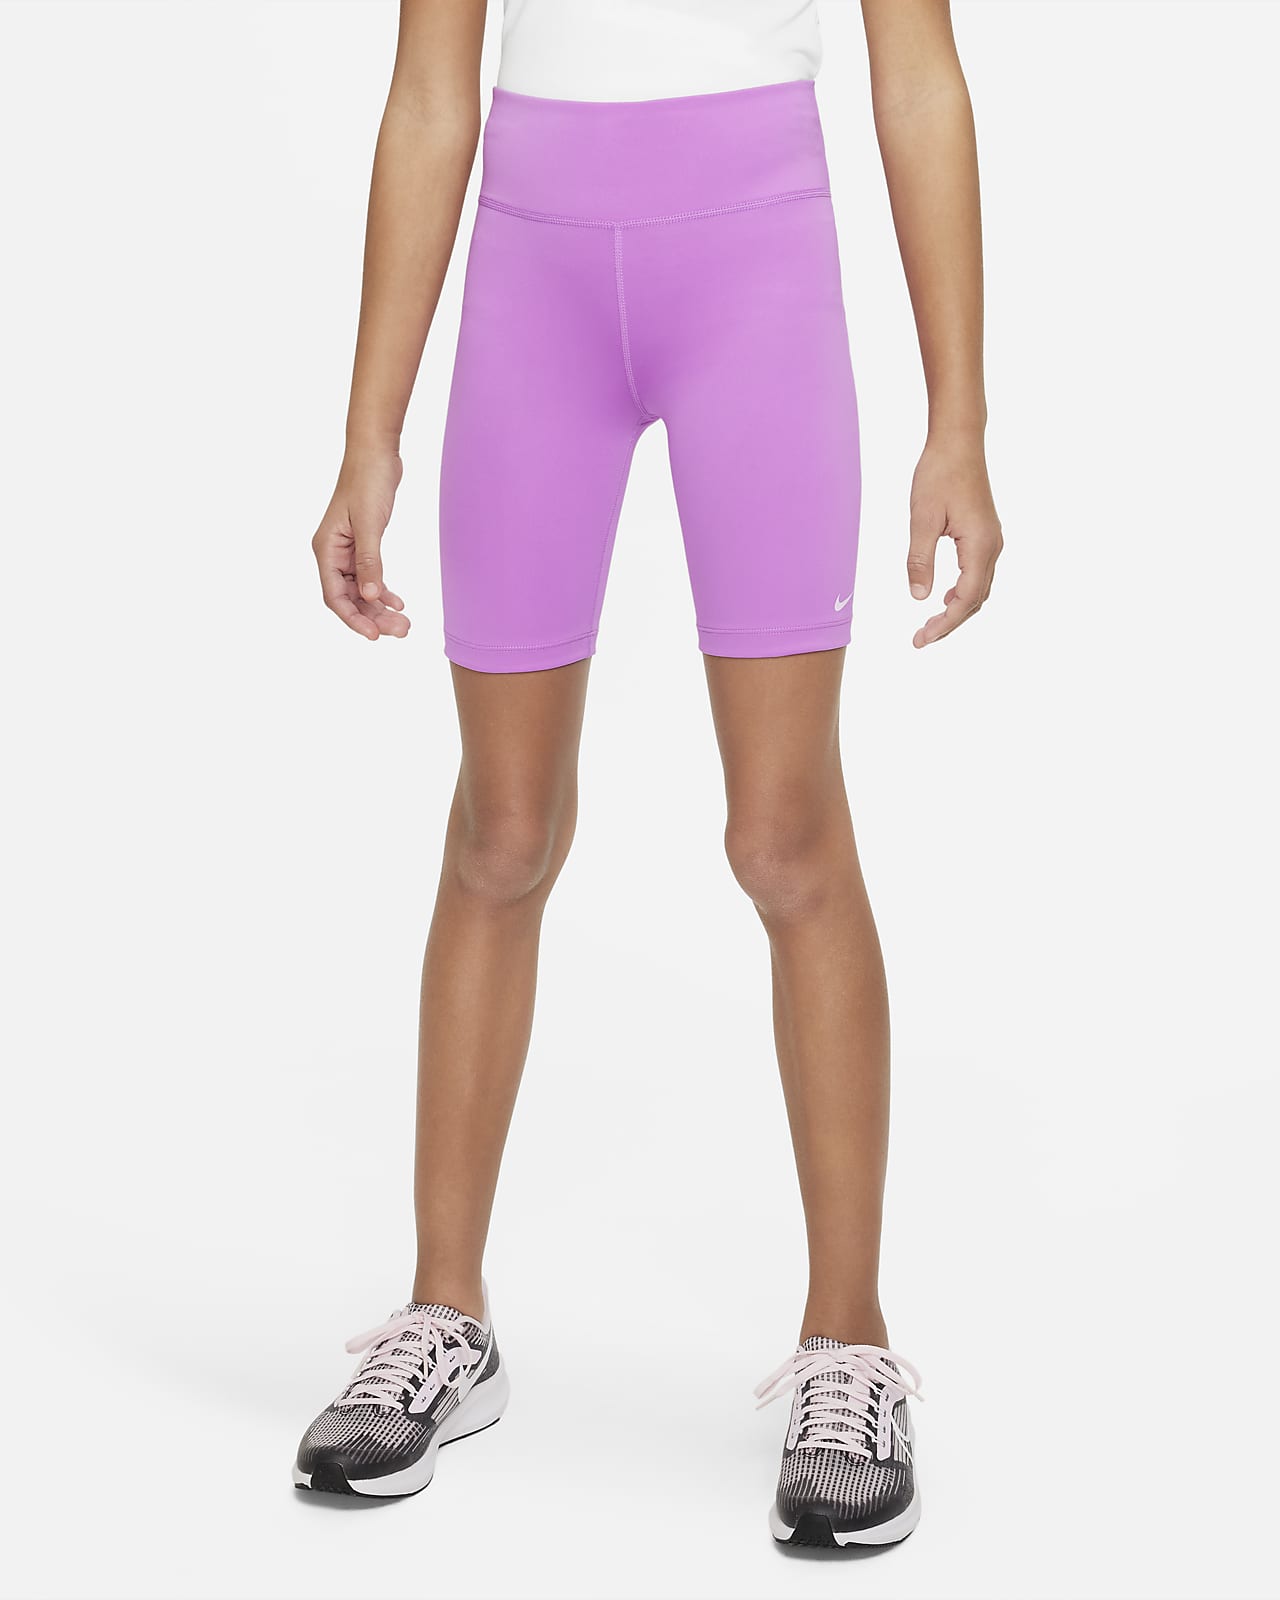 Shorts. Nike Big (Girls\') Bike One Kids\'